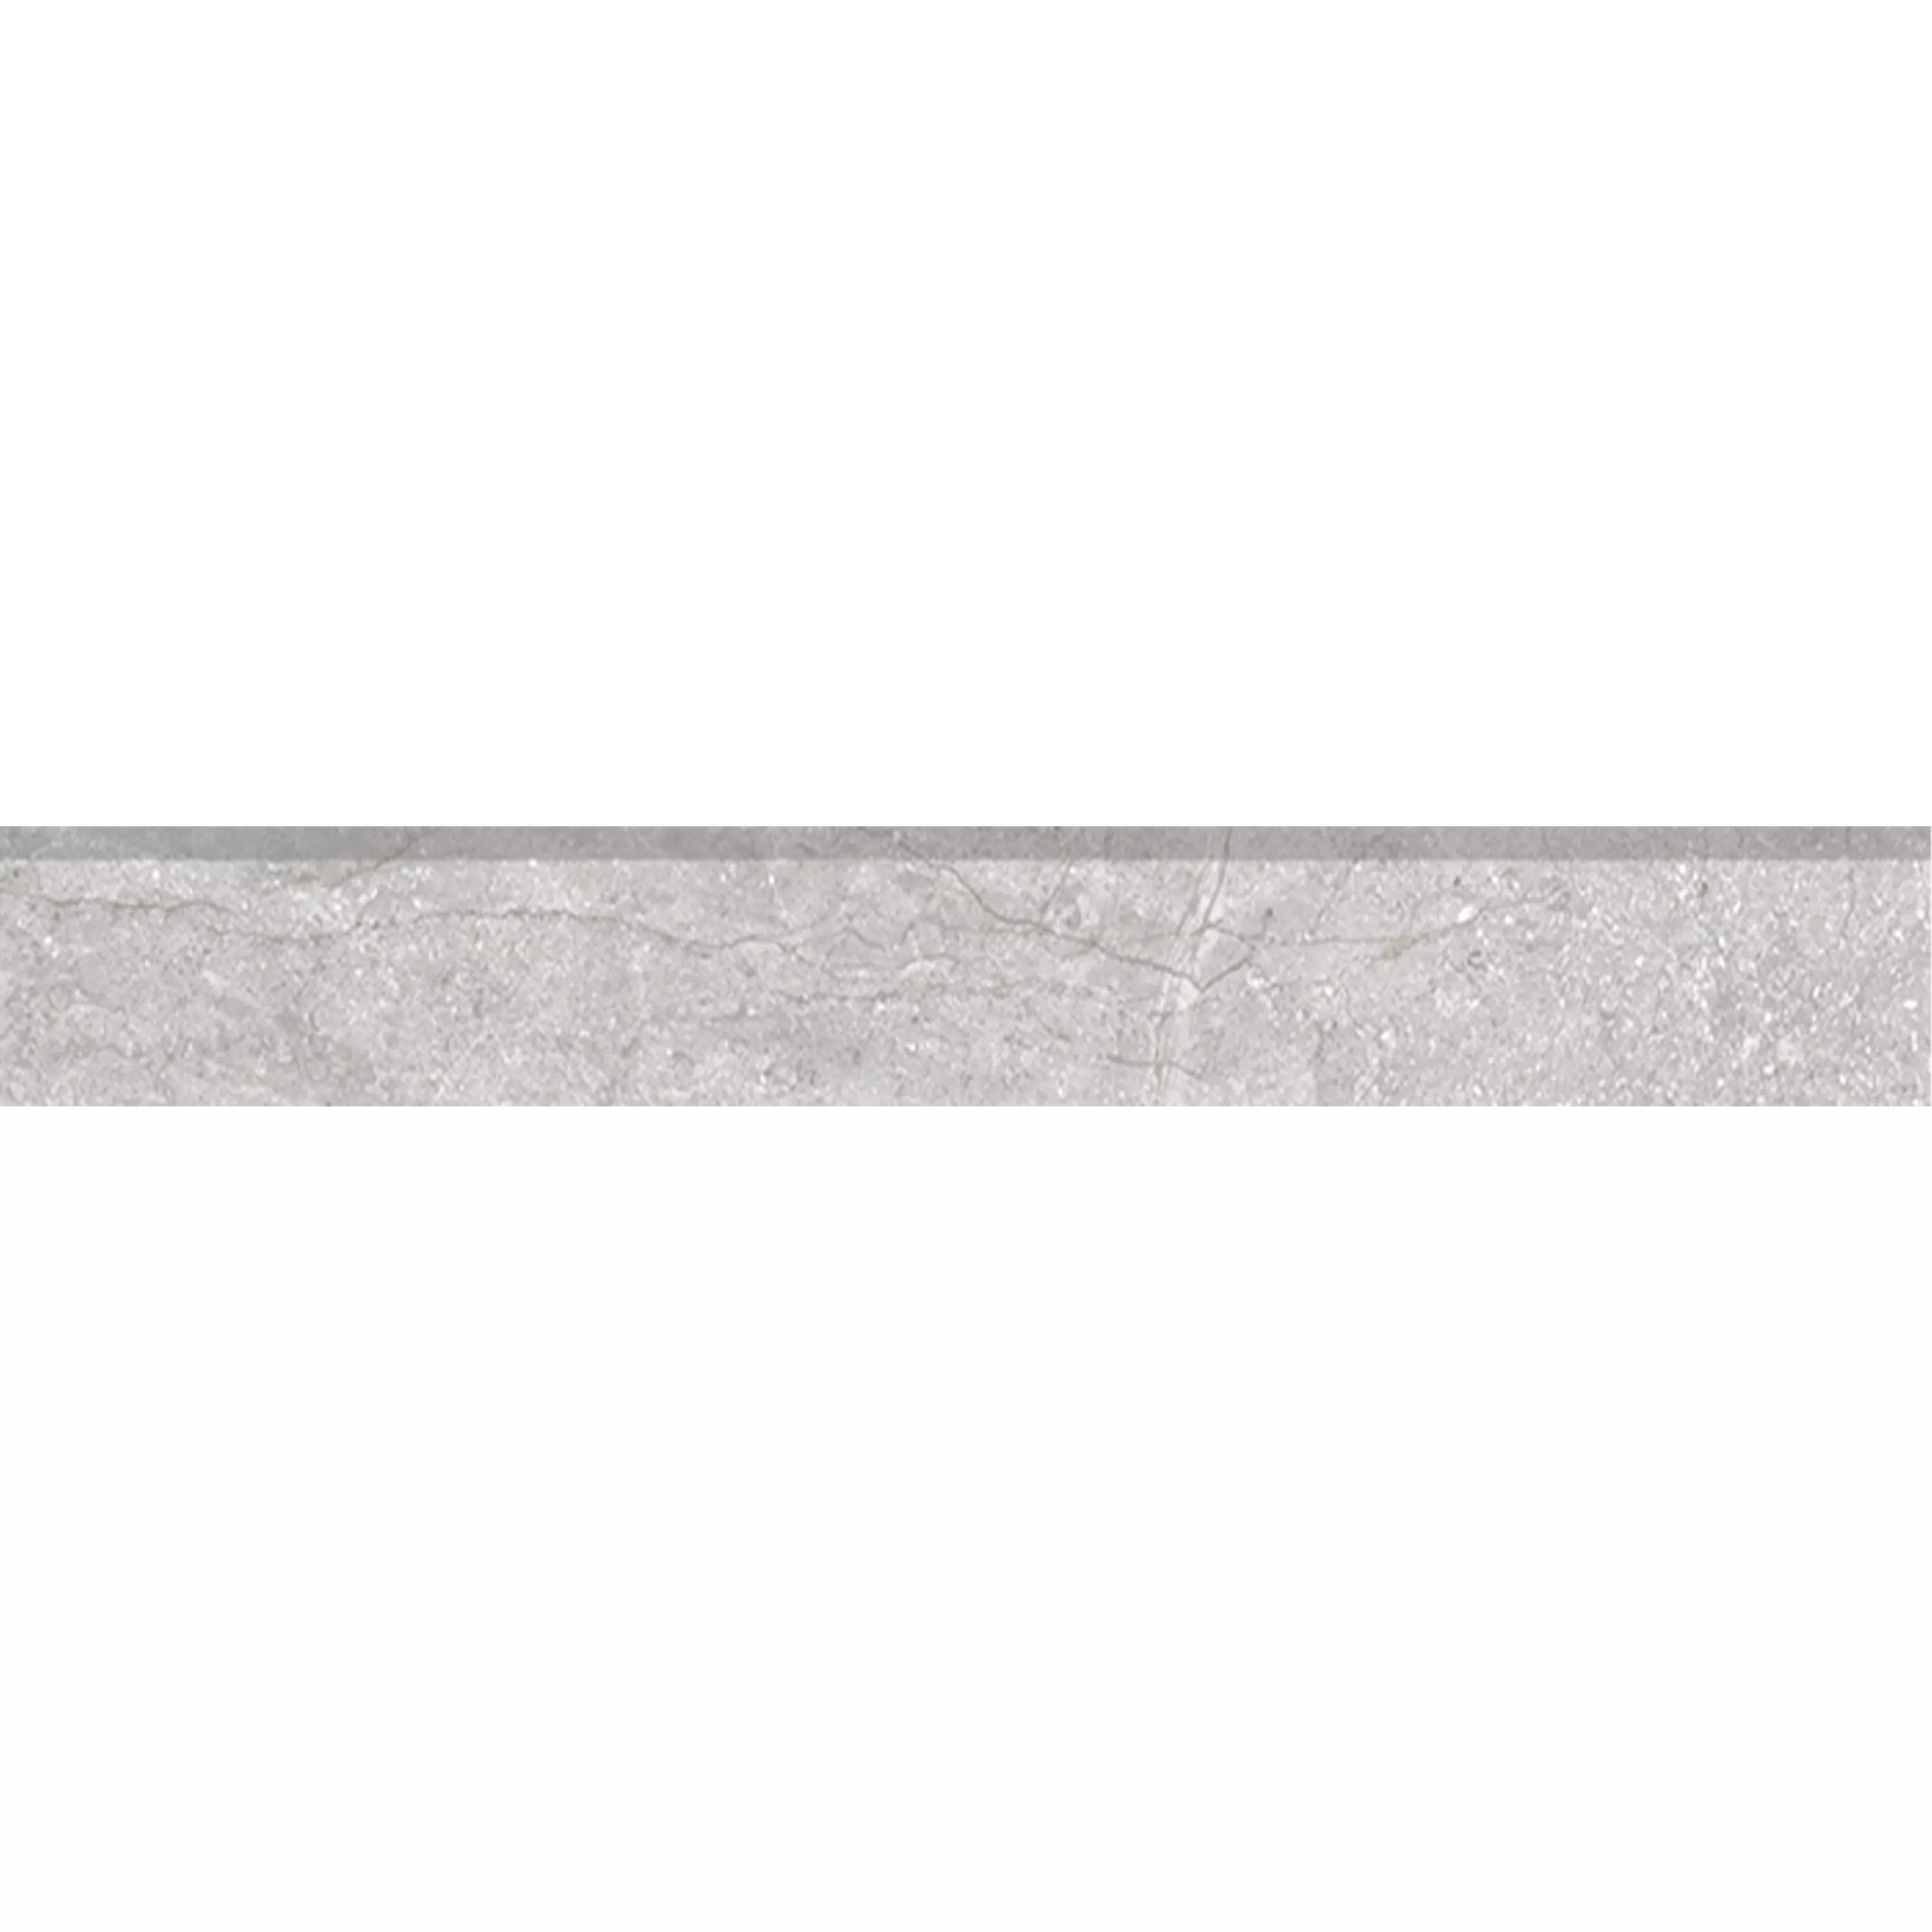 Πλακάκια Δαπέδου Pangea Μαρμάρινη Όψη Παγωμένος Ασήμι Bάση 7x60cm